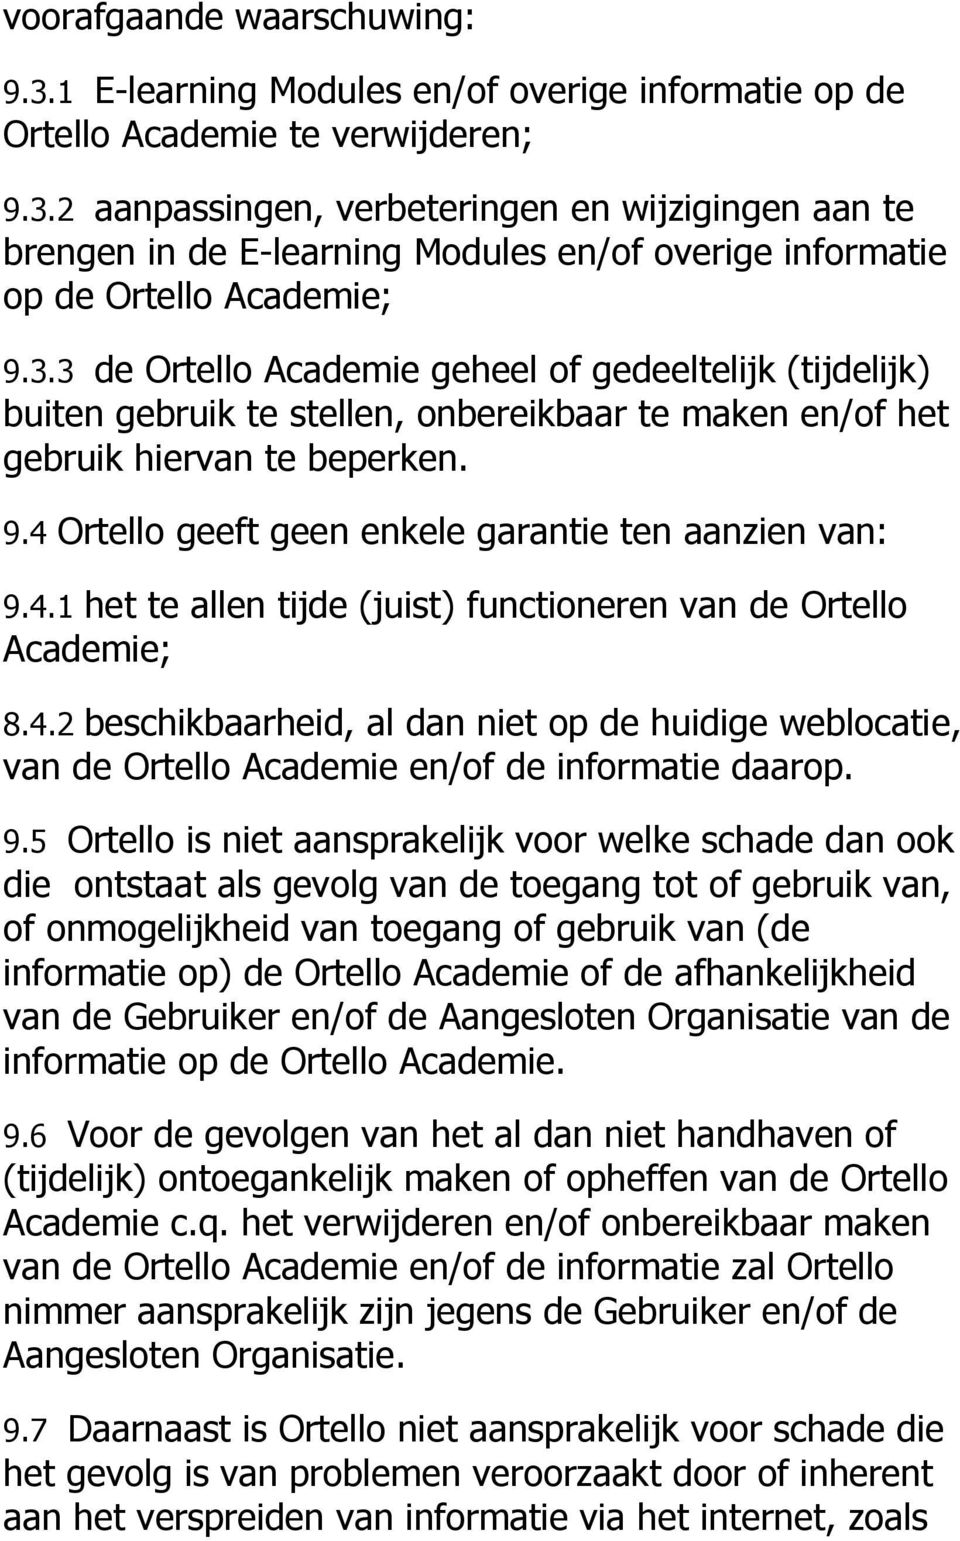 4 Ortello geeft geen enkele garantie ten aanzien van: 9.4.1 het te allen tijde (juist) functioneren van de Ortello Academie; 8.4.2 beschikbaarheid, al dan niet op de huidige weblocatie, van de Ortello Academie en/of de informatie daarop.